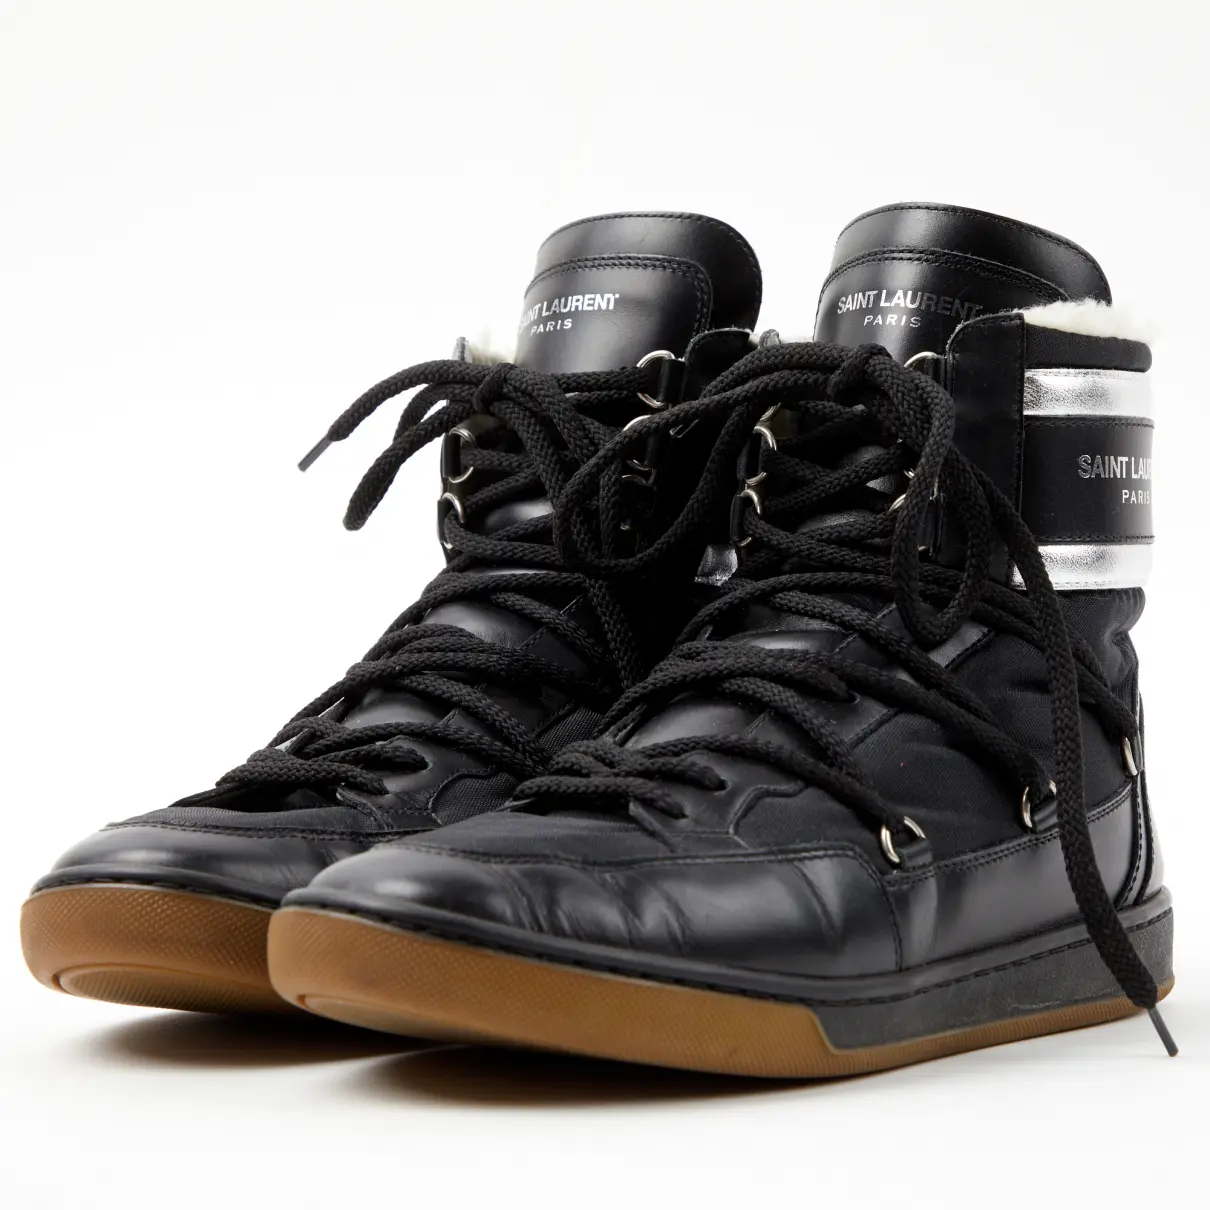 Buy Saint Laurent Leather lace up boots online